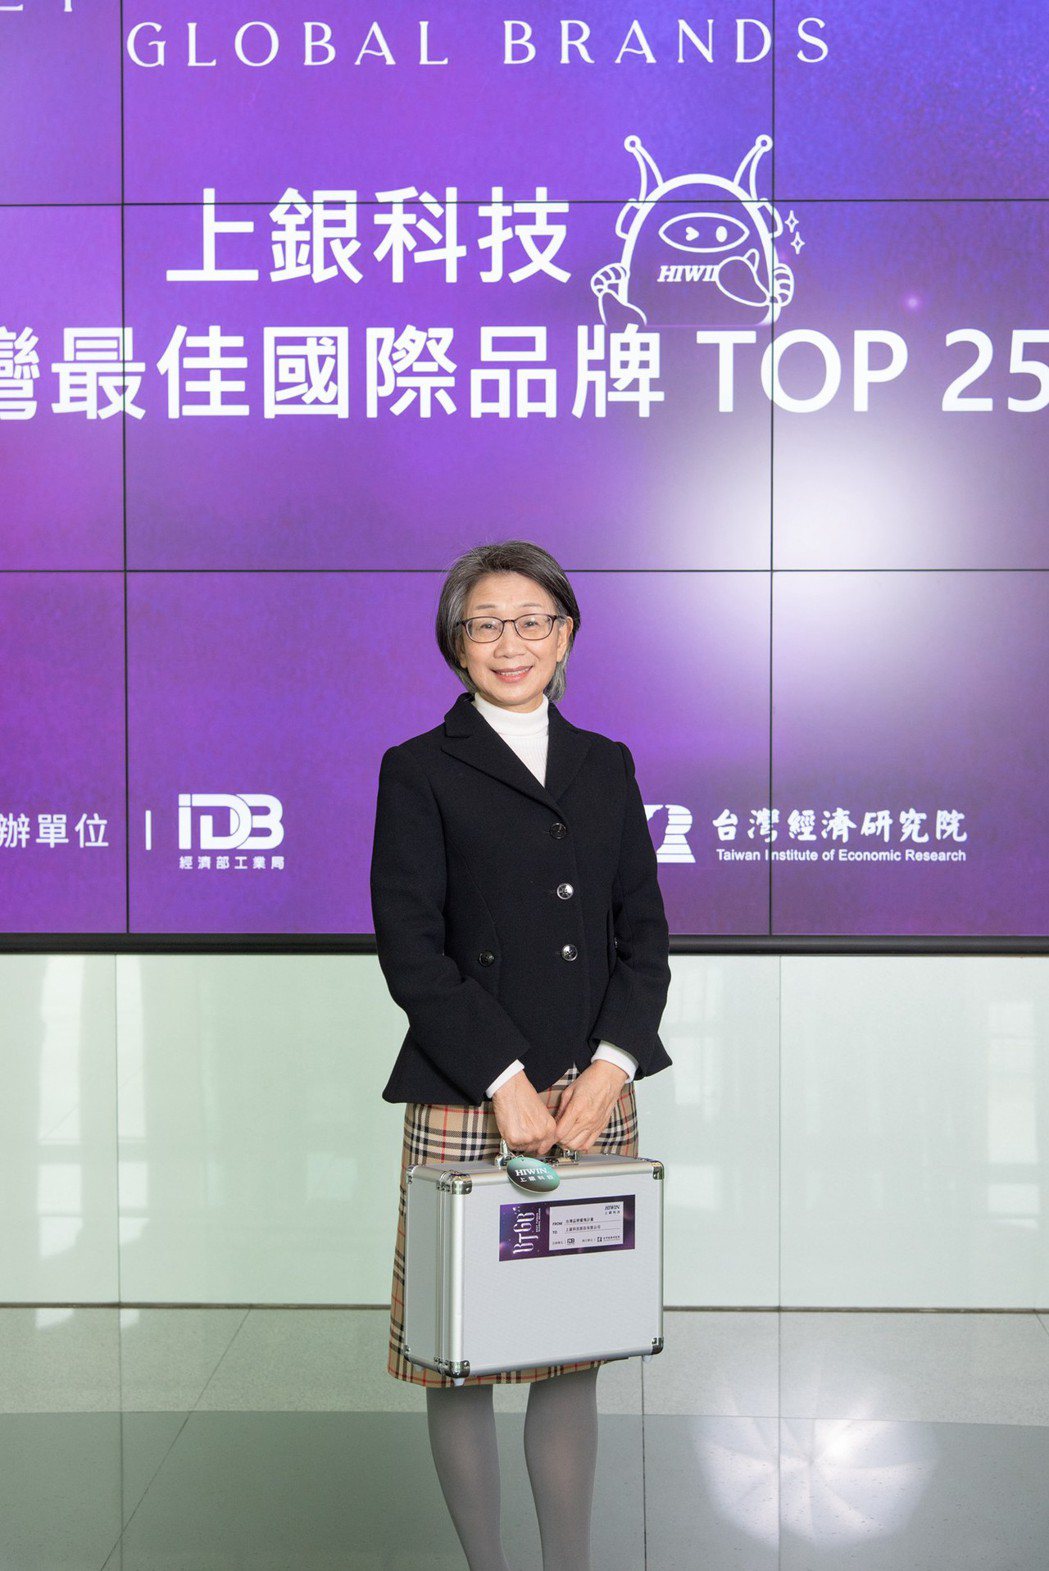 上銀科技獲2021台灣最佳國際品牌-蔡惠卿總經理。 上銀科技/提供